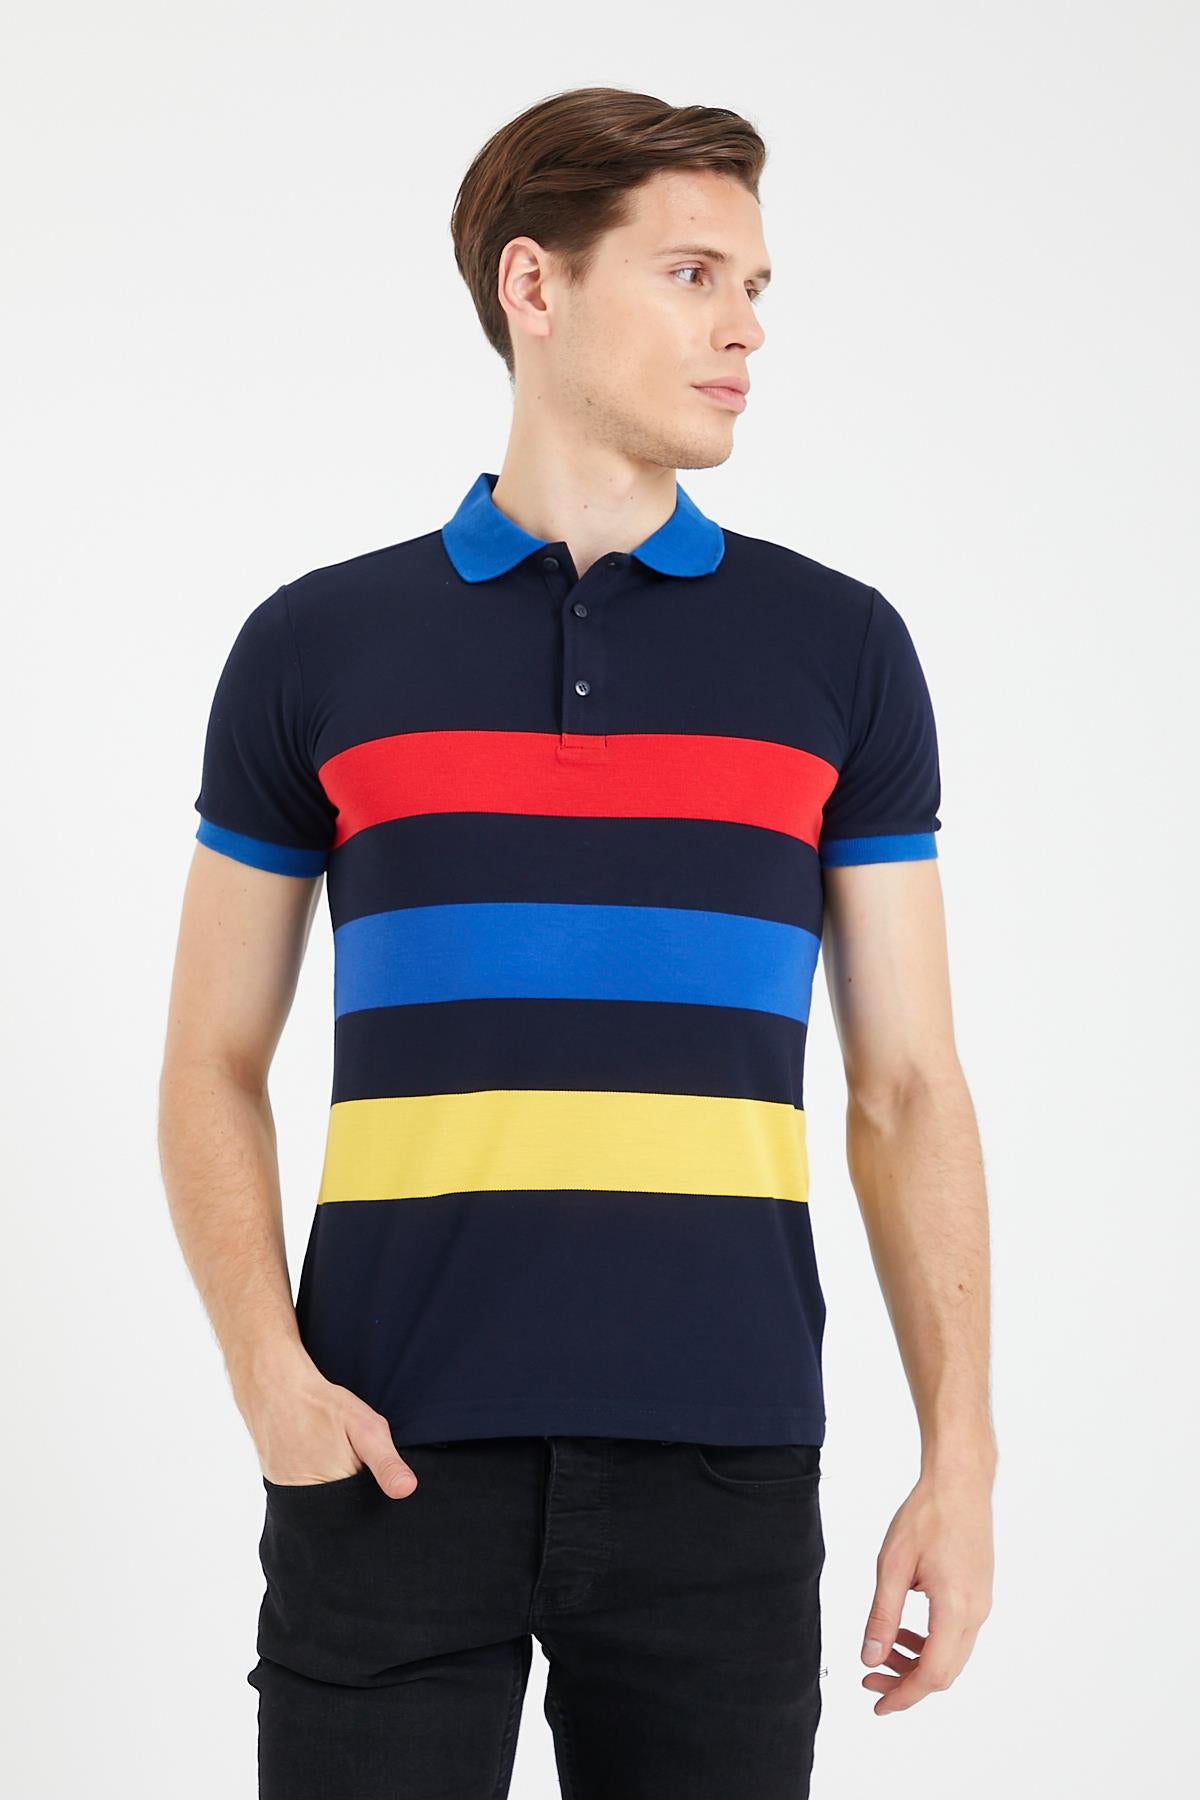 Renkli Panelli Ringelli Polo Yaka erkek kısa kol tişört